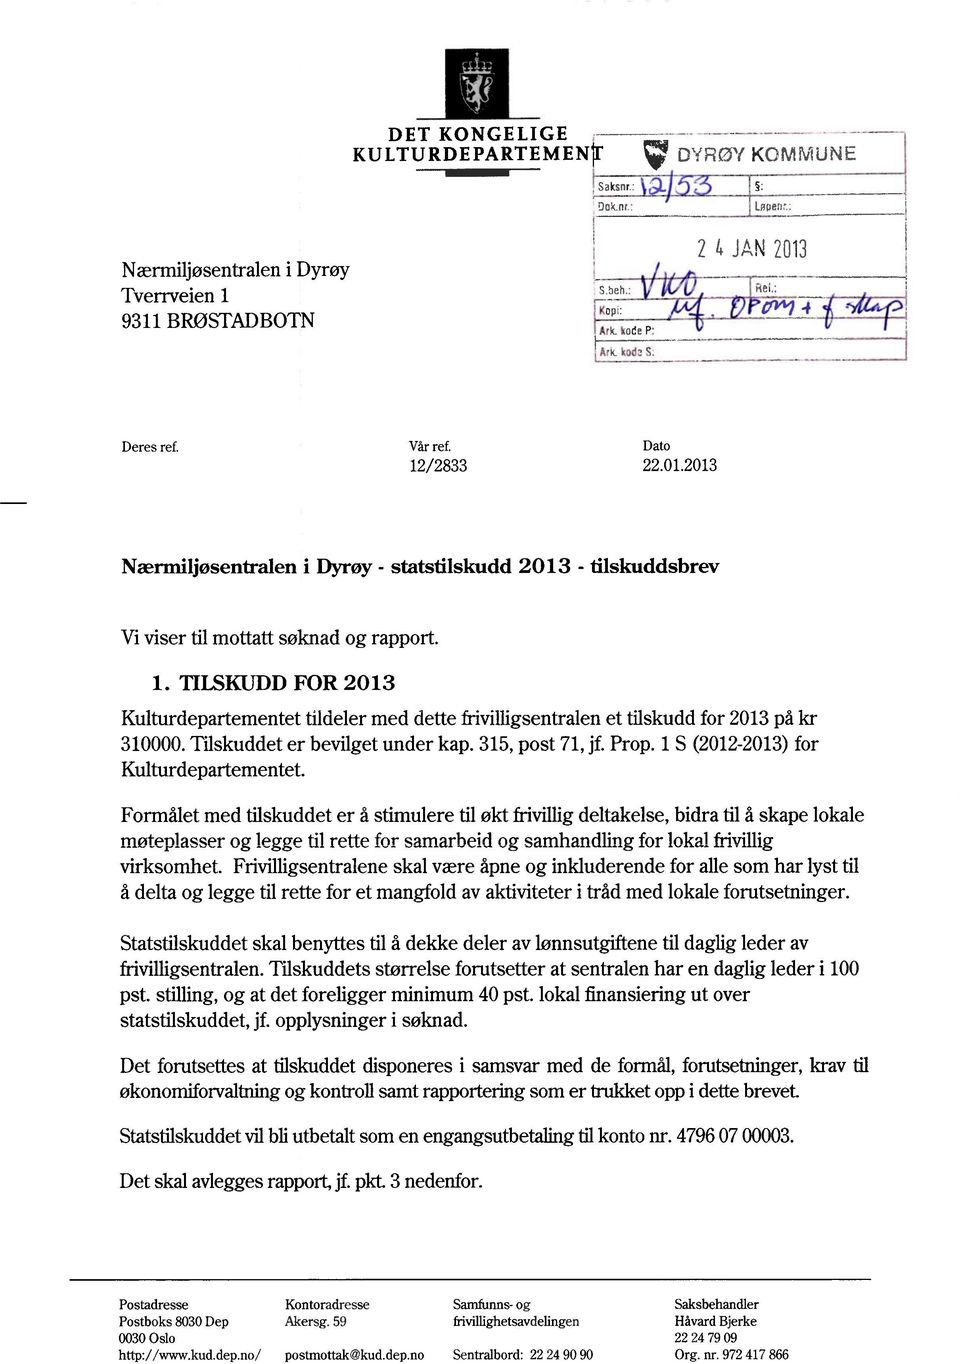 Tilskuddeter bevilgetunder kap.315,post 71,jf.Prop.1S (2012-2013) for Kulturdepartementet.